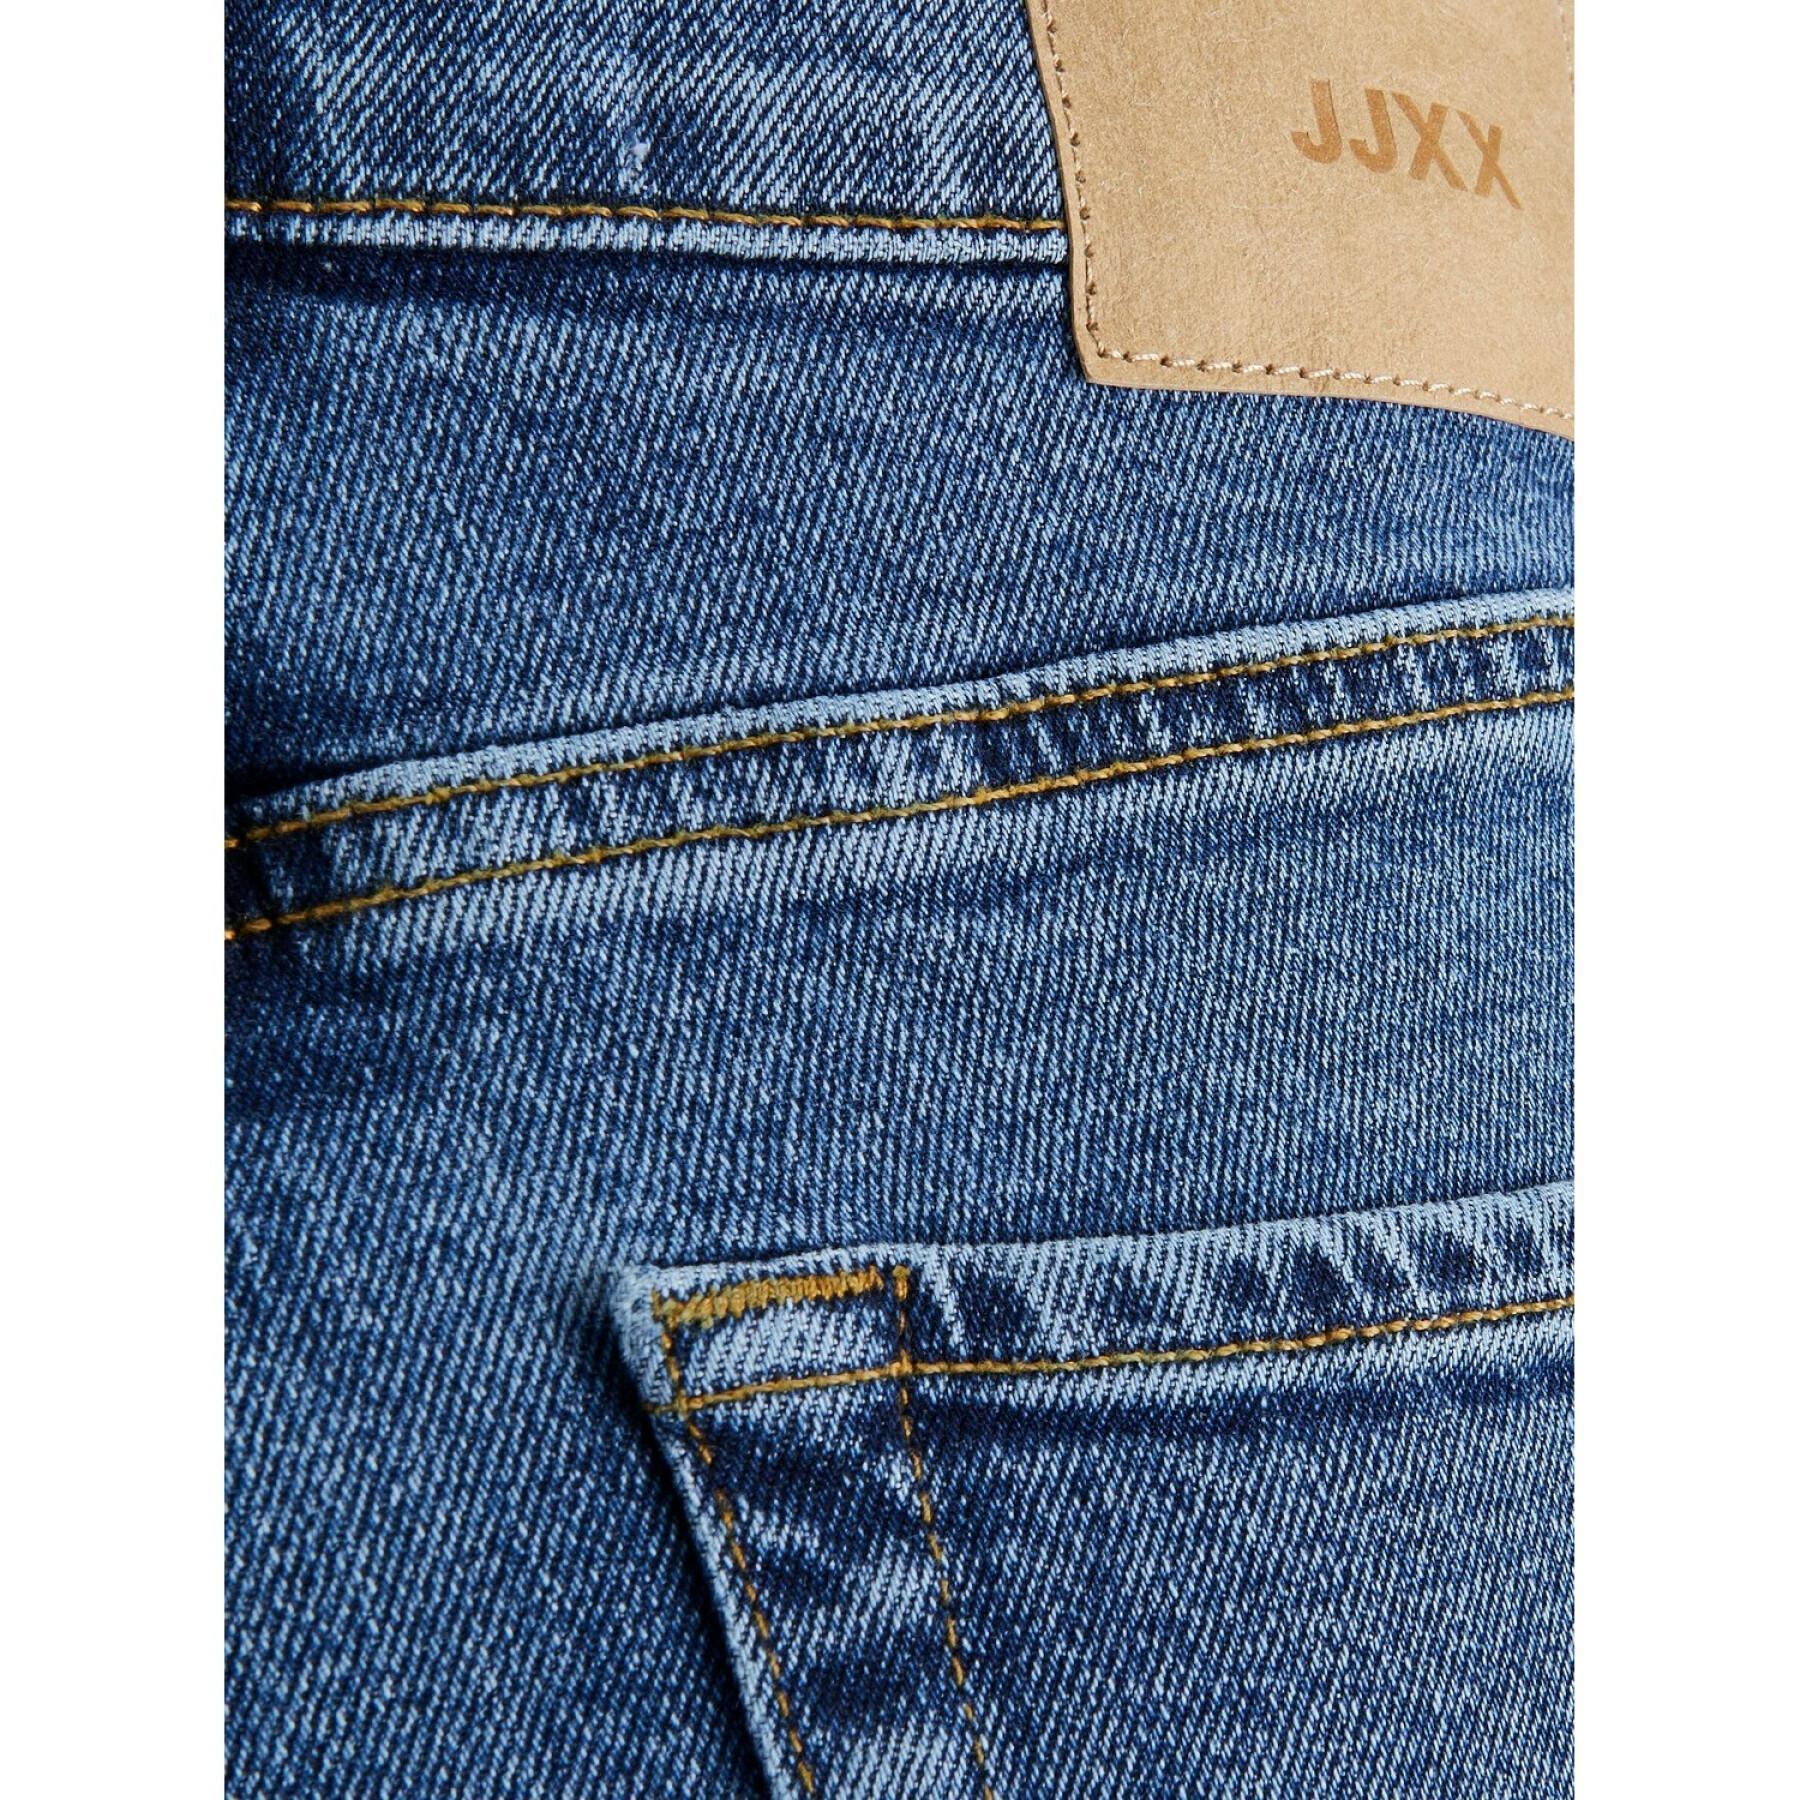 Rechte jeans voor dames JJXX seoul cc3002